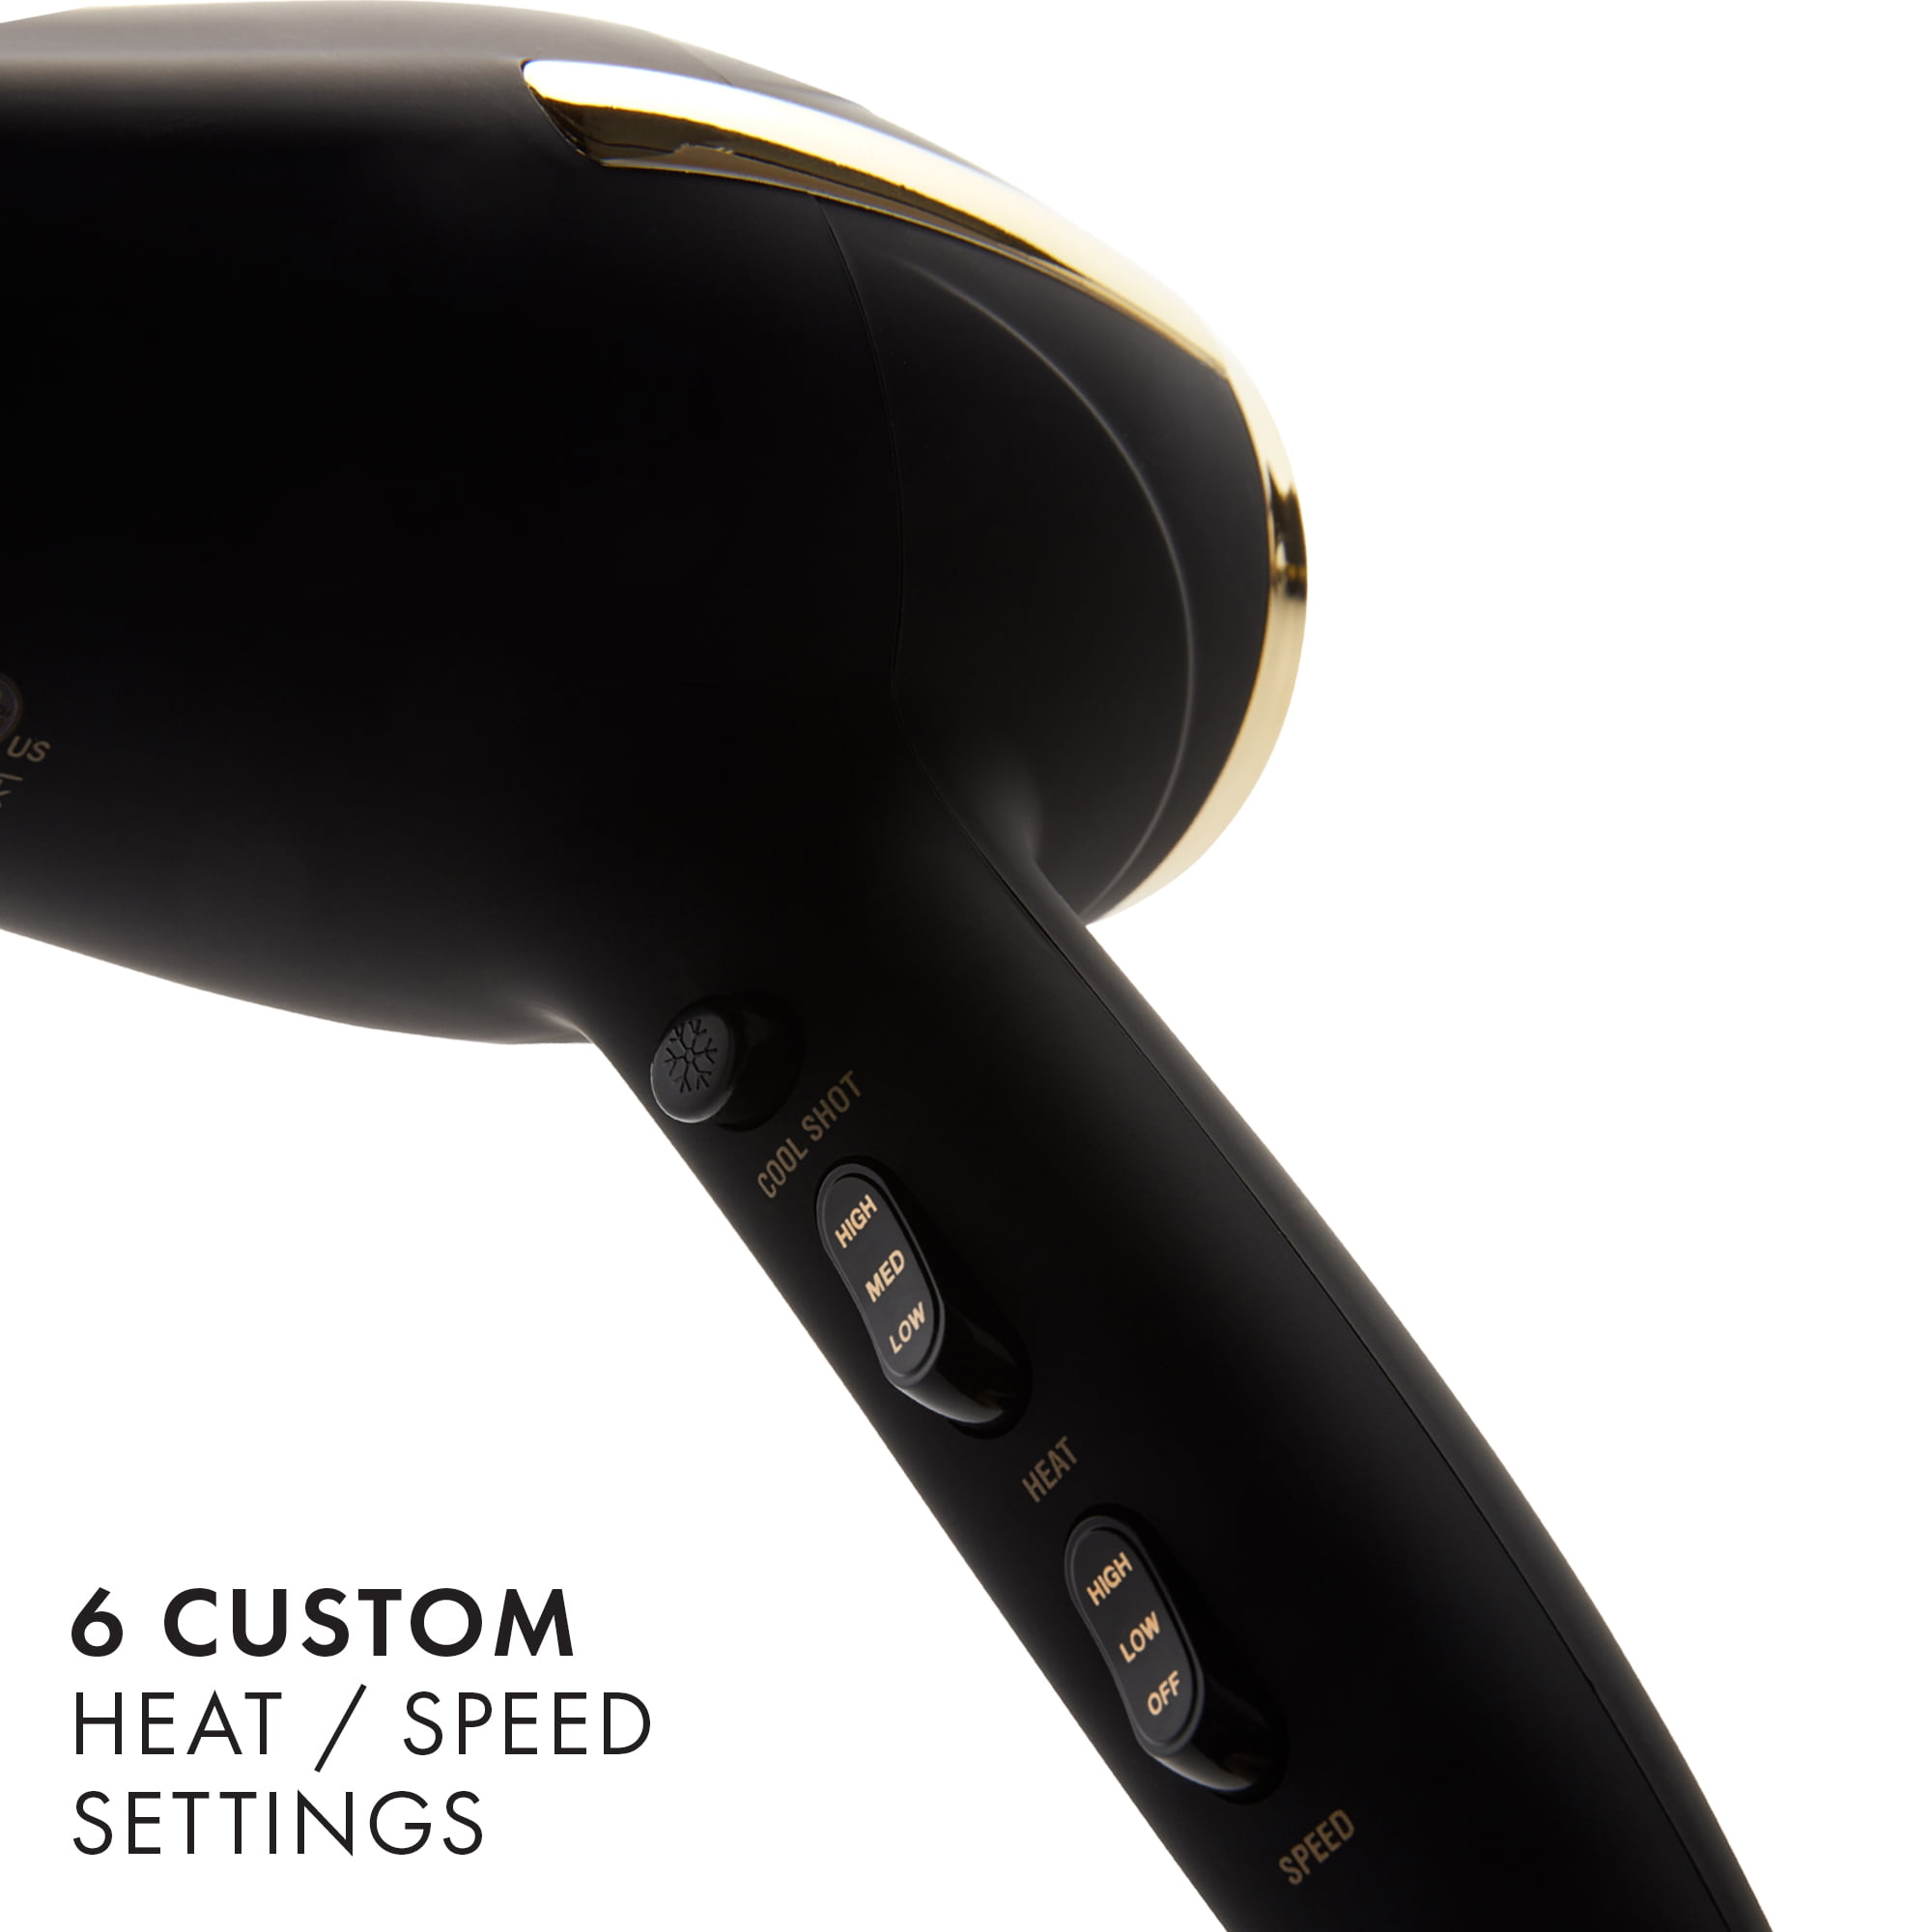 Hot Tools Pro Signature 1875W Ionic + Ceramic Hair Dryer, Black